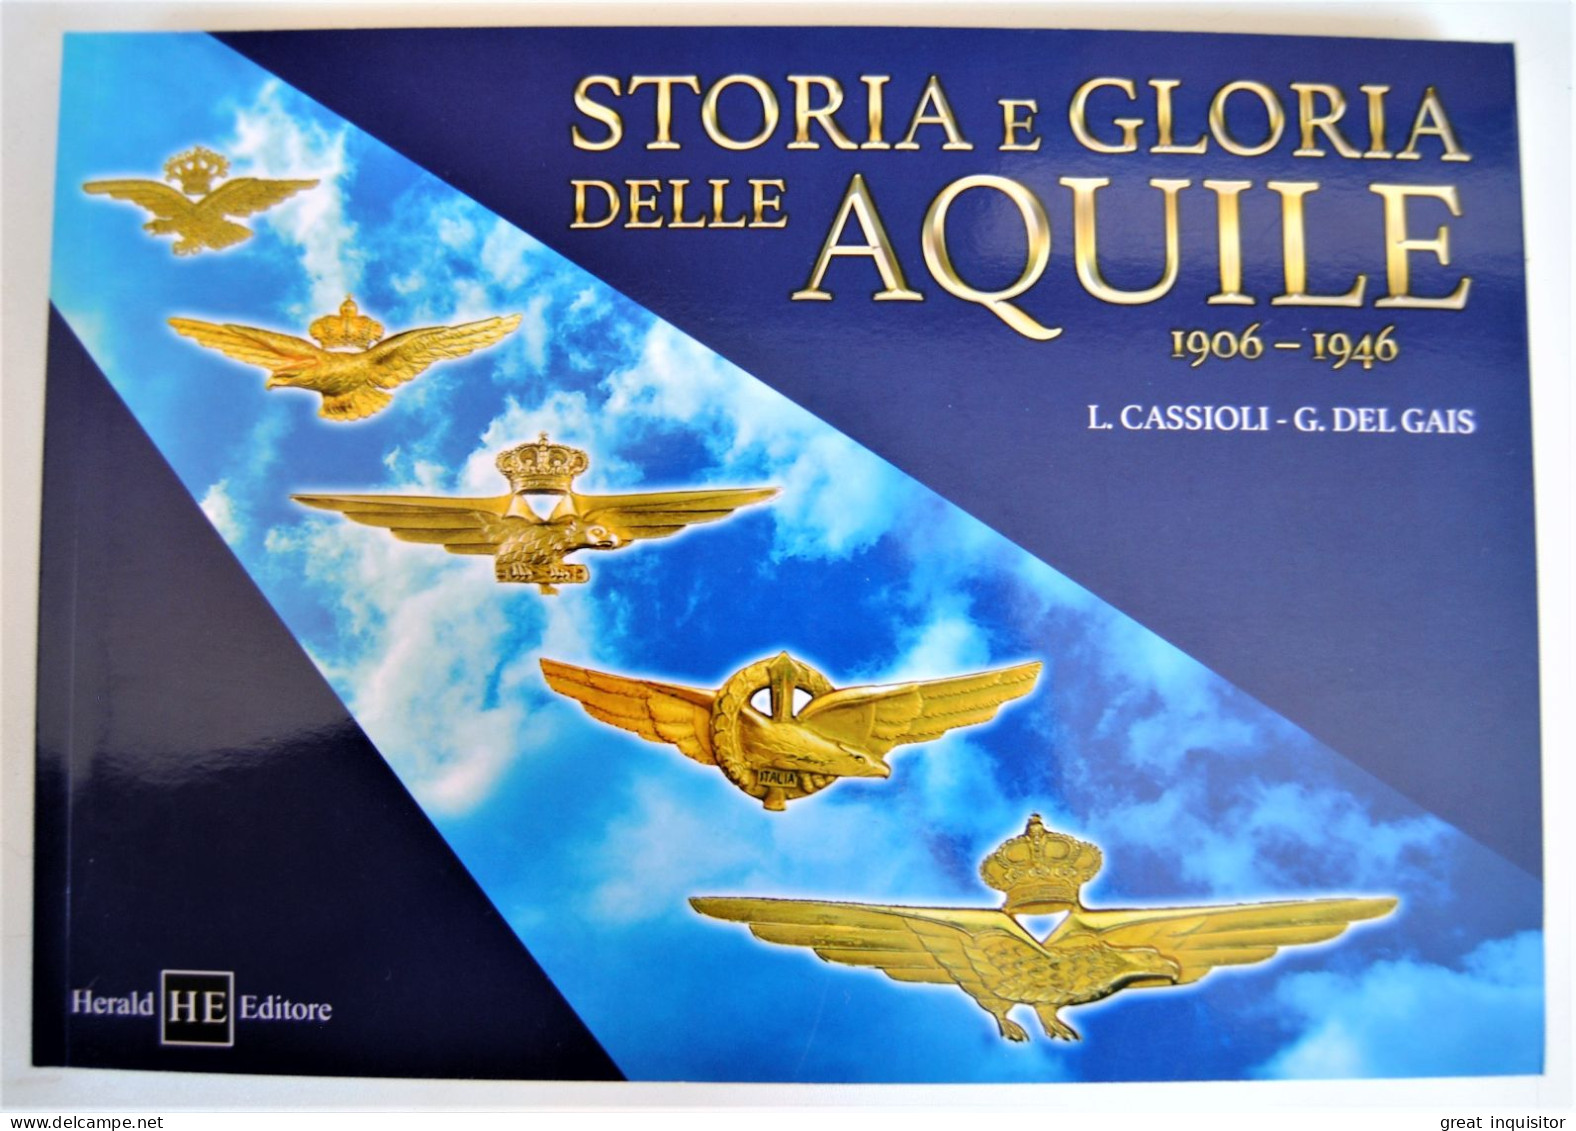 Decorazione da petto ovvero brevetto pilota militare d’aeroplano della Regia Aeronautica modello 1935 (REGNO D'ITALIA)